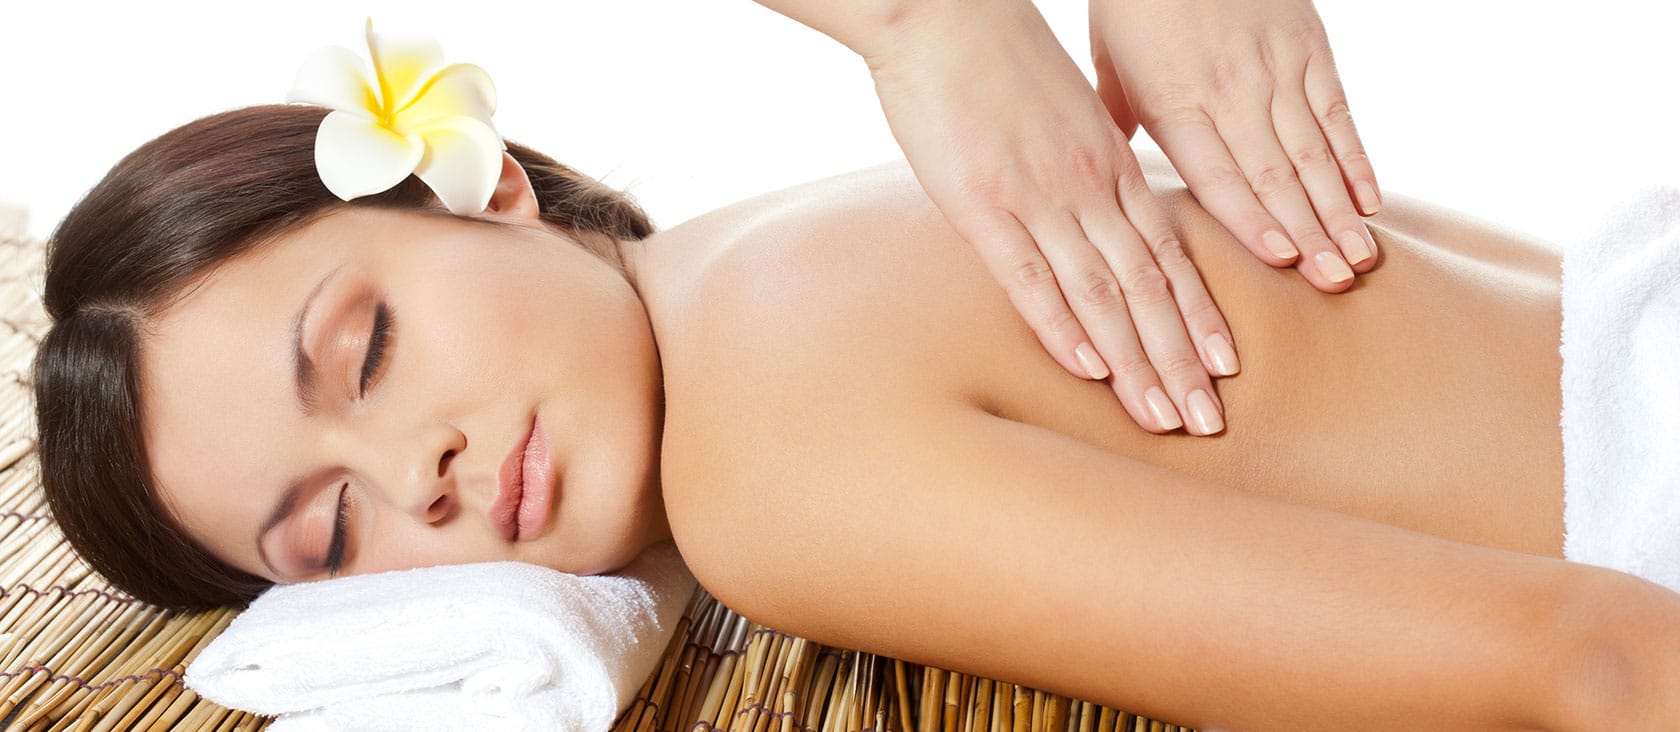 massage thư giãn cơ thể